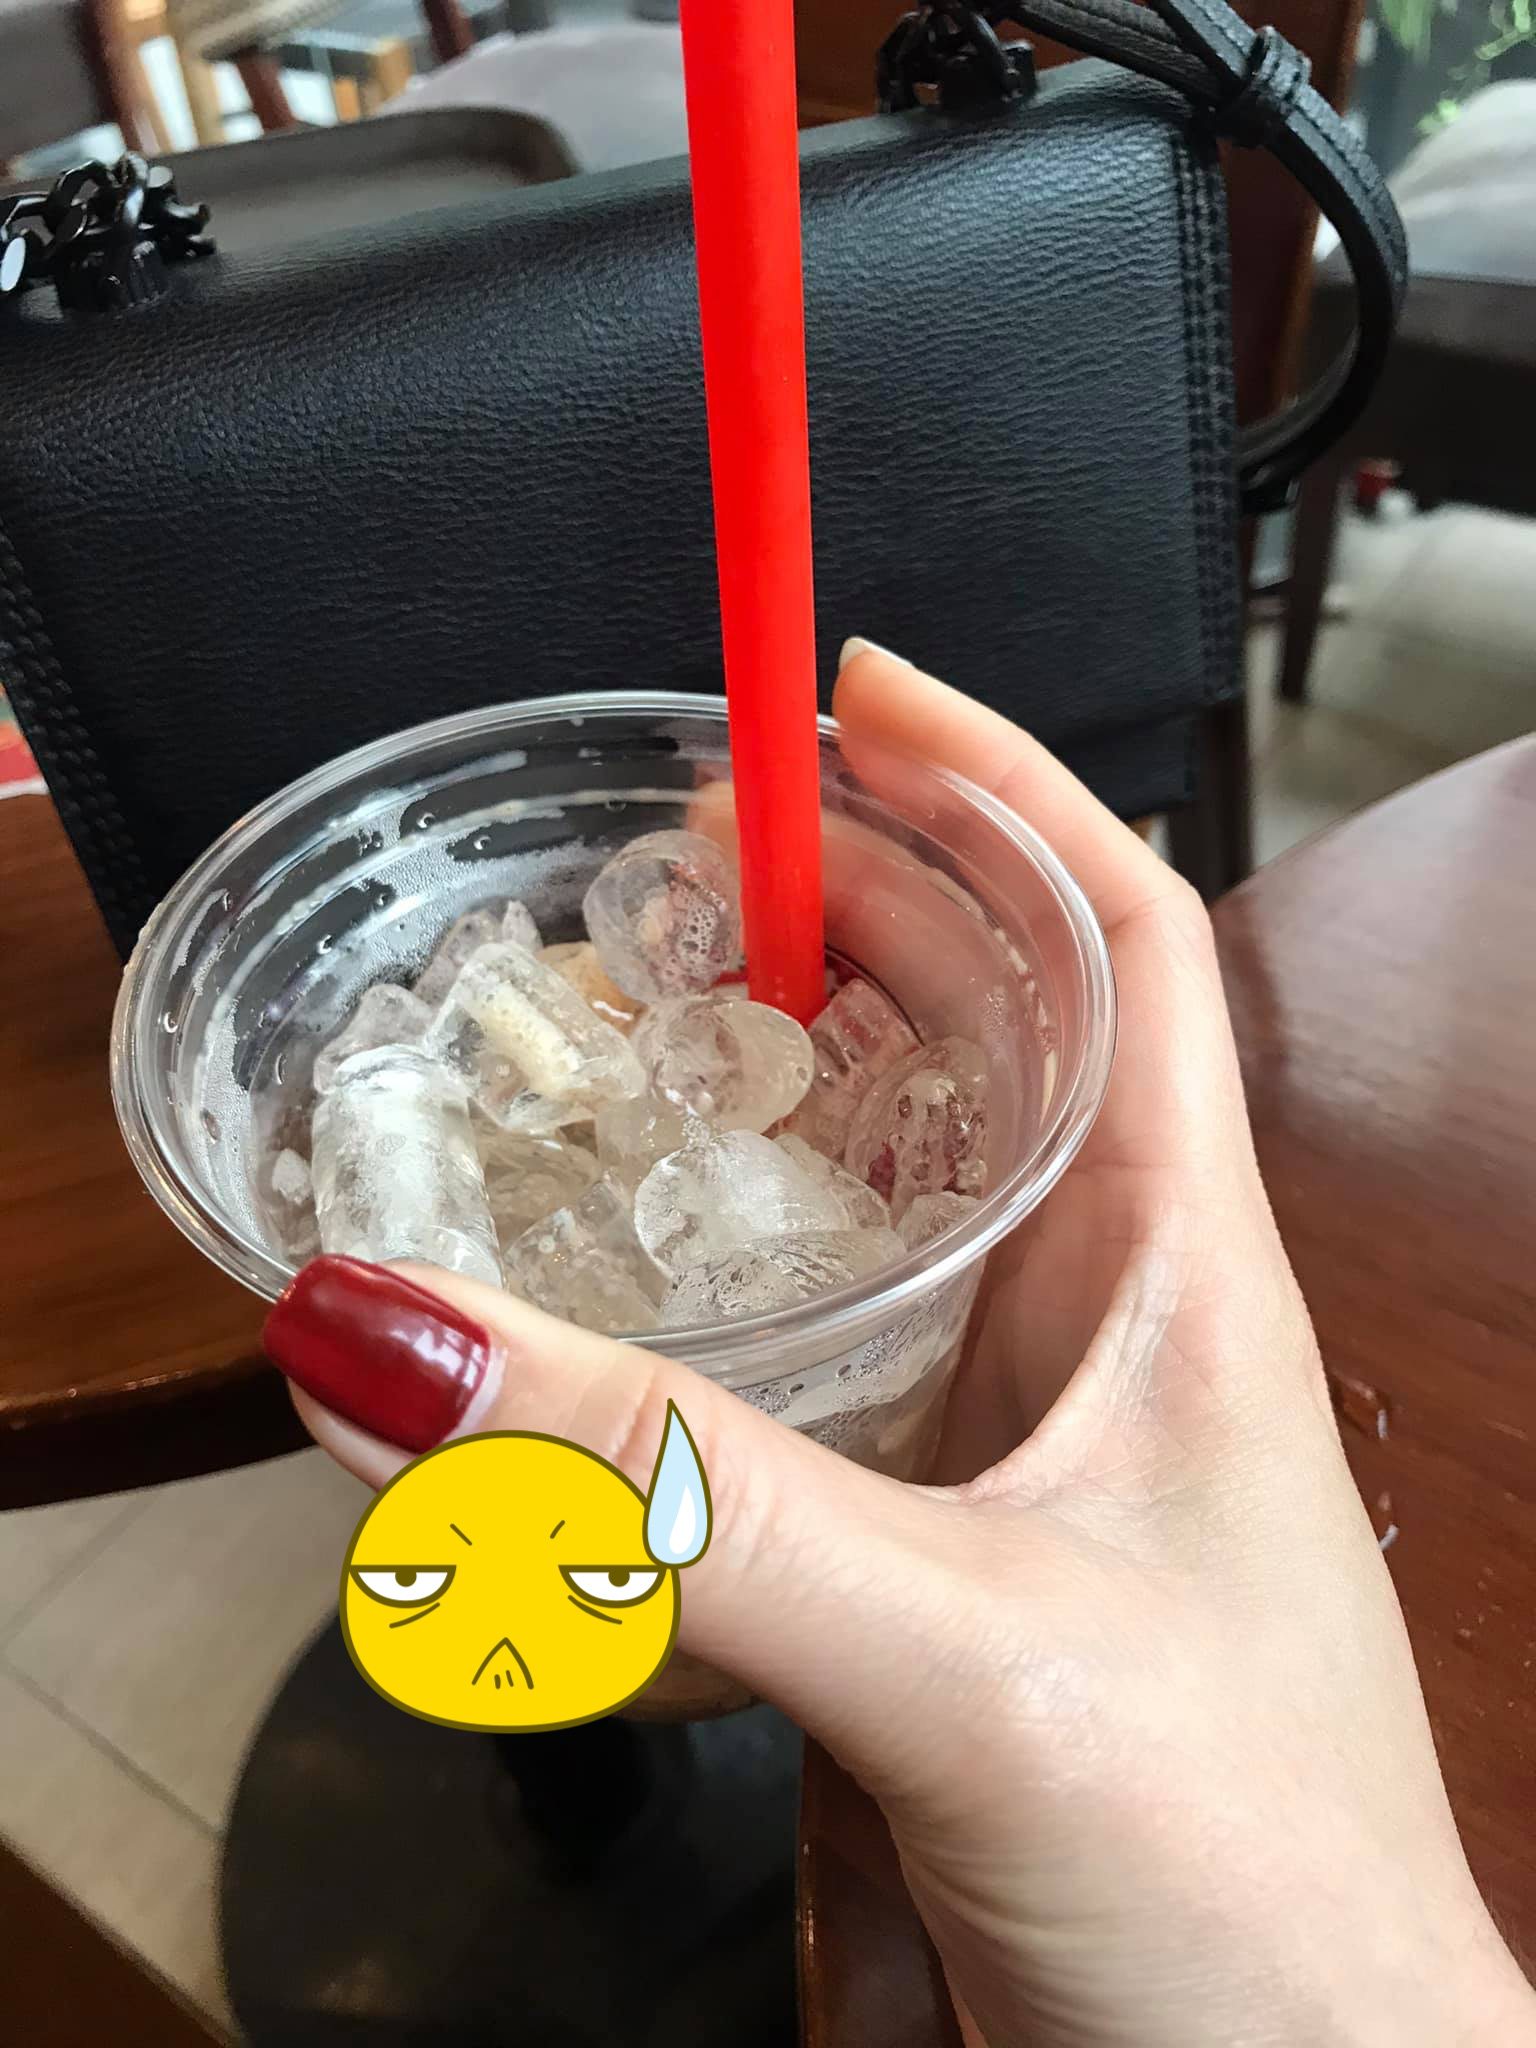 Cô gái khóc ròng khoe ly đá trị giá 45k được khuyến mãi thêm tí cà phê, netizen ào ào vào khuyên nhủ giải thích nguyên do - Ảnh 2.